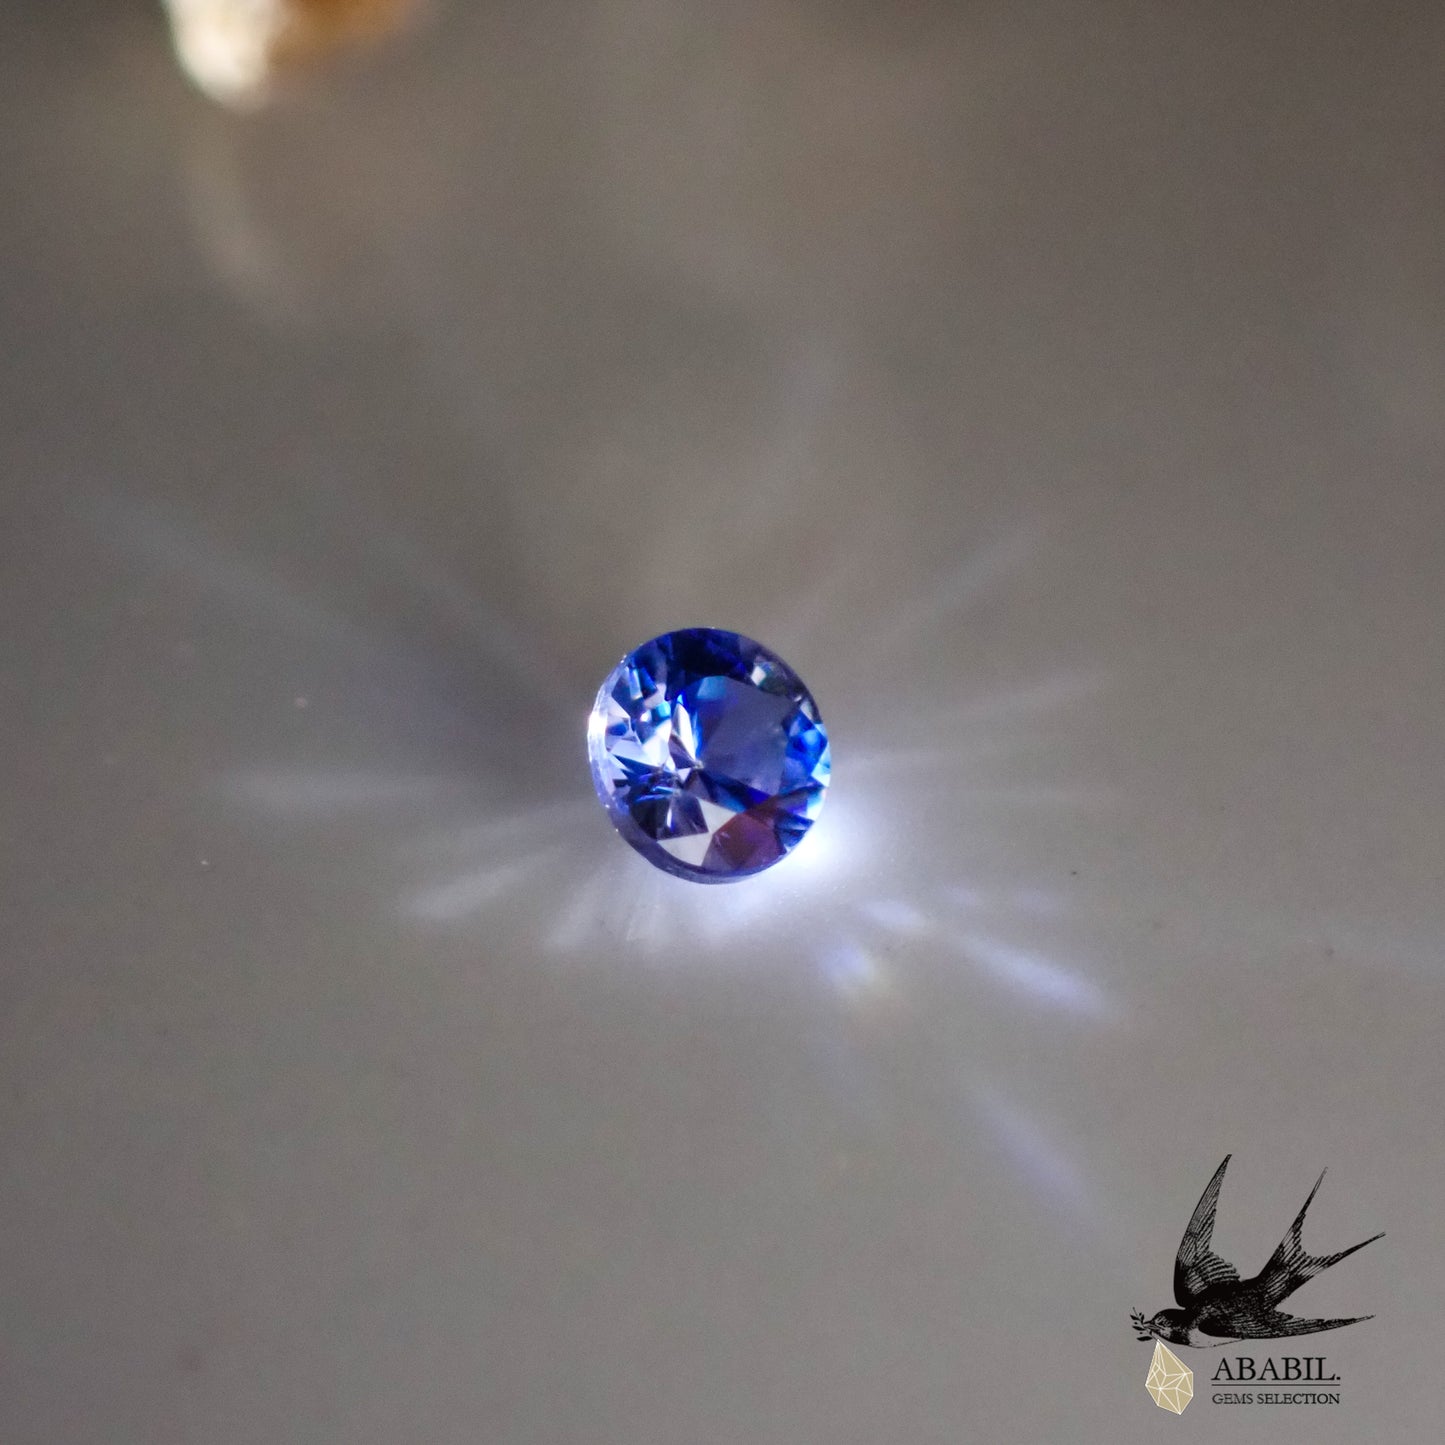 天然藍錐礦 0.057ct [USA] Dark rare stone ★Multicolor gemstone 